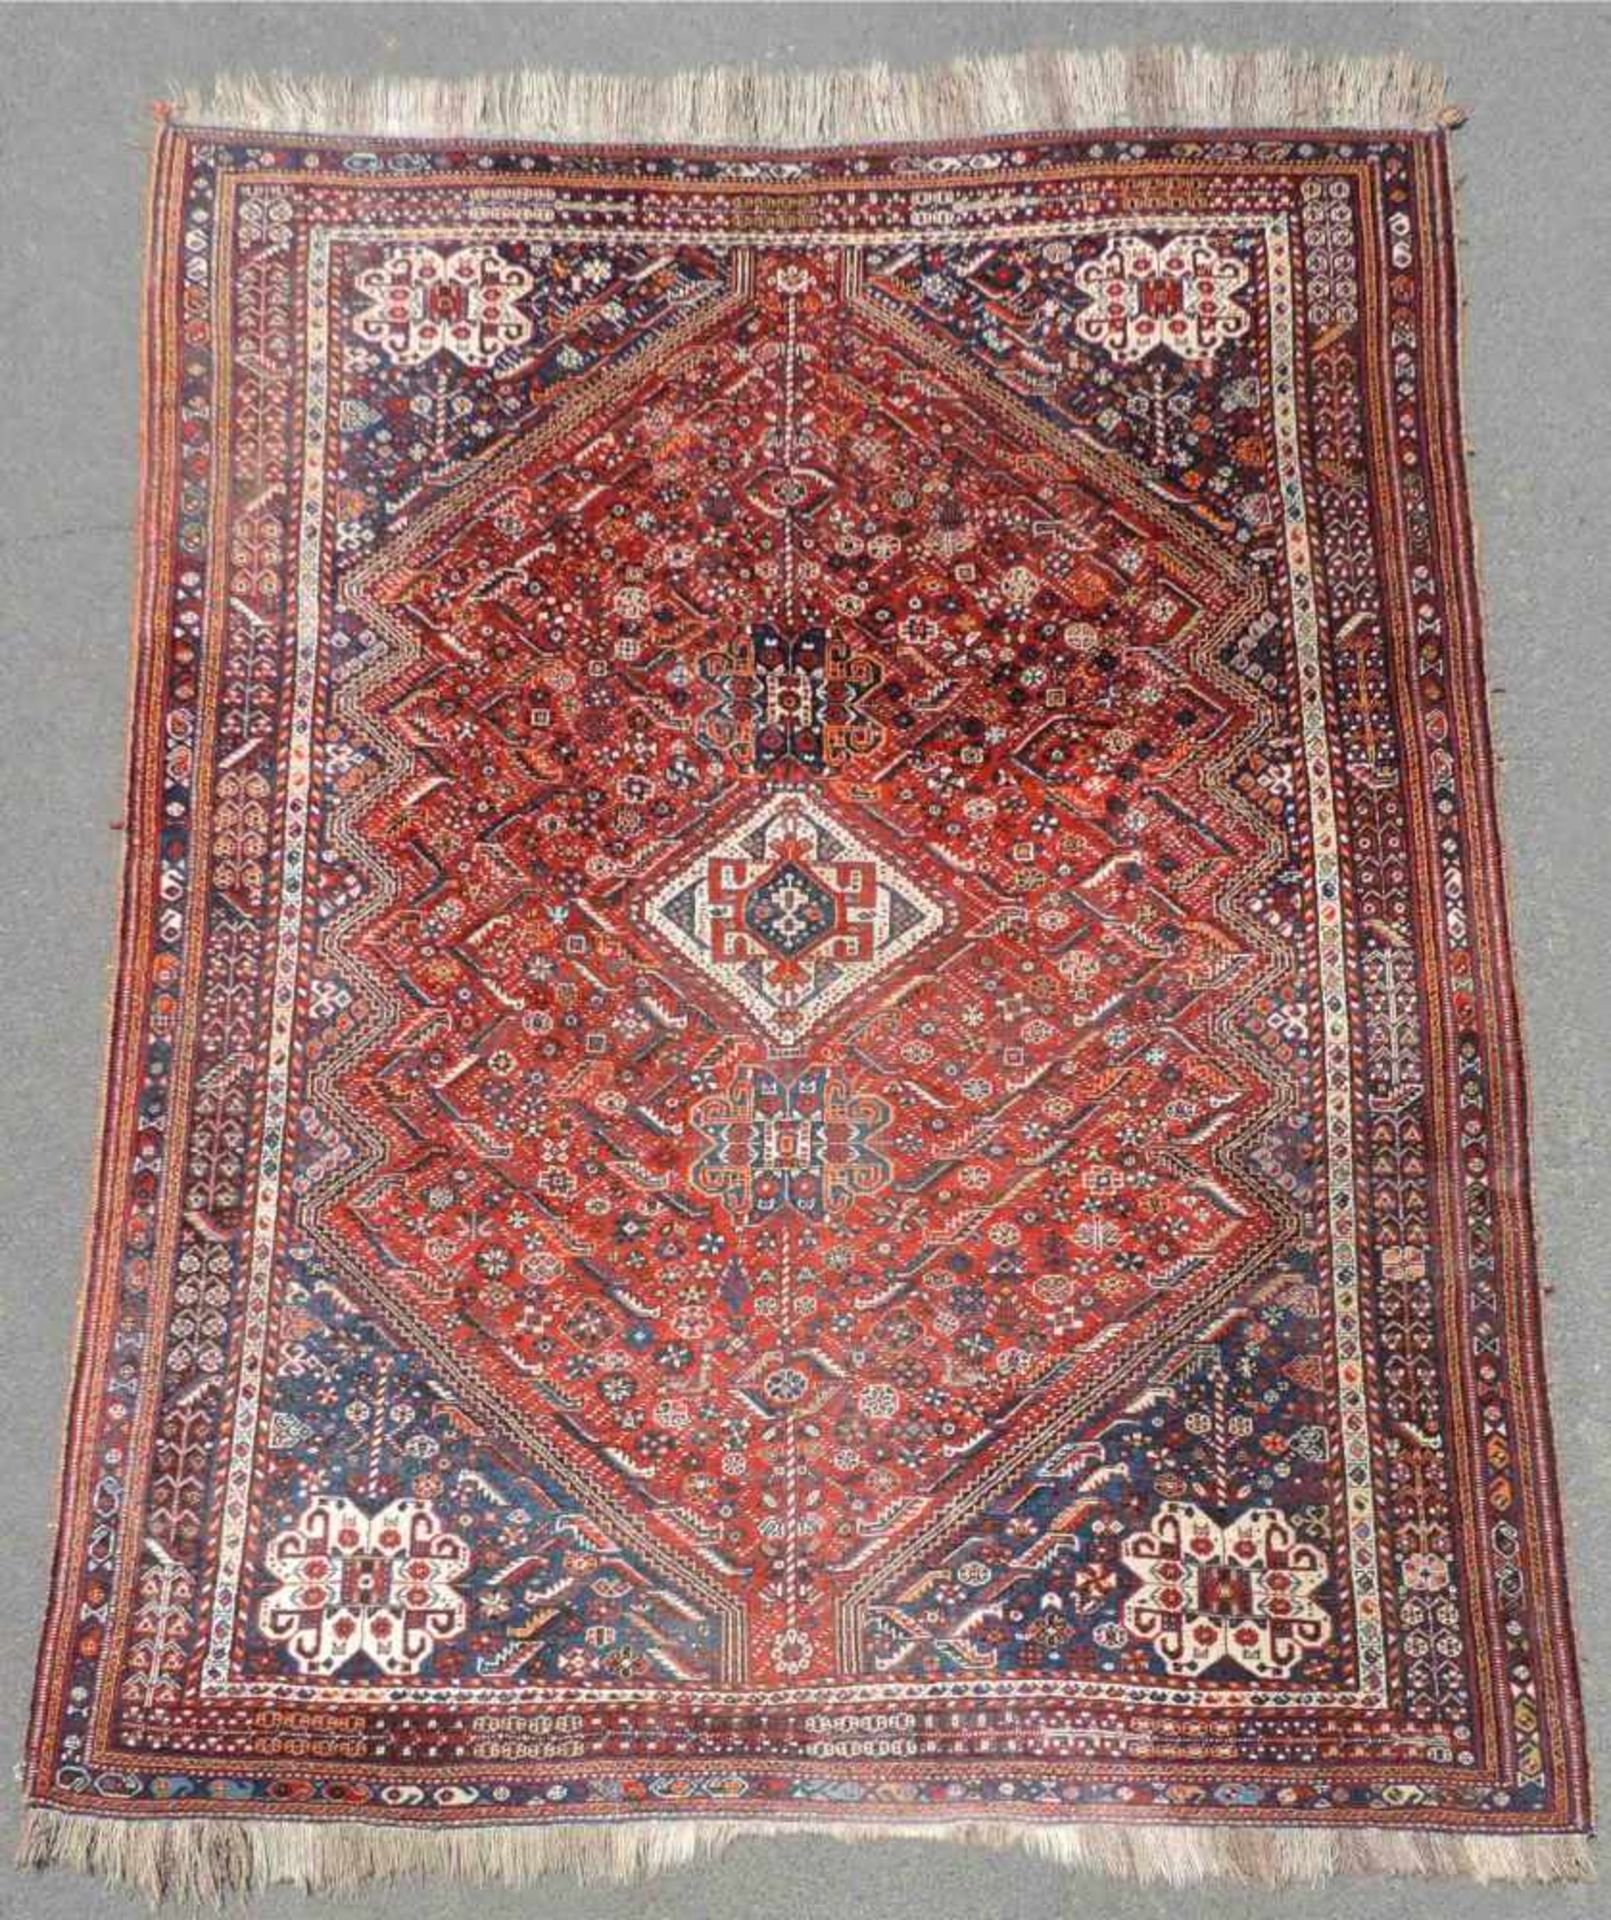 Quaschkai Perserteppich. Iran. Mitte 20. Jahrhundert. 310 cm x 205 cm. Handgeknüpft. Wolle auf